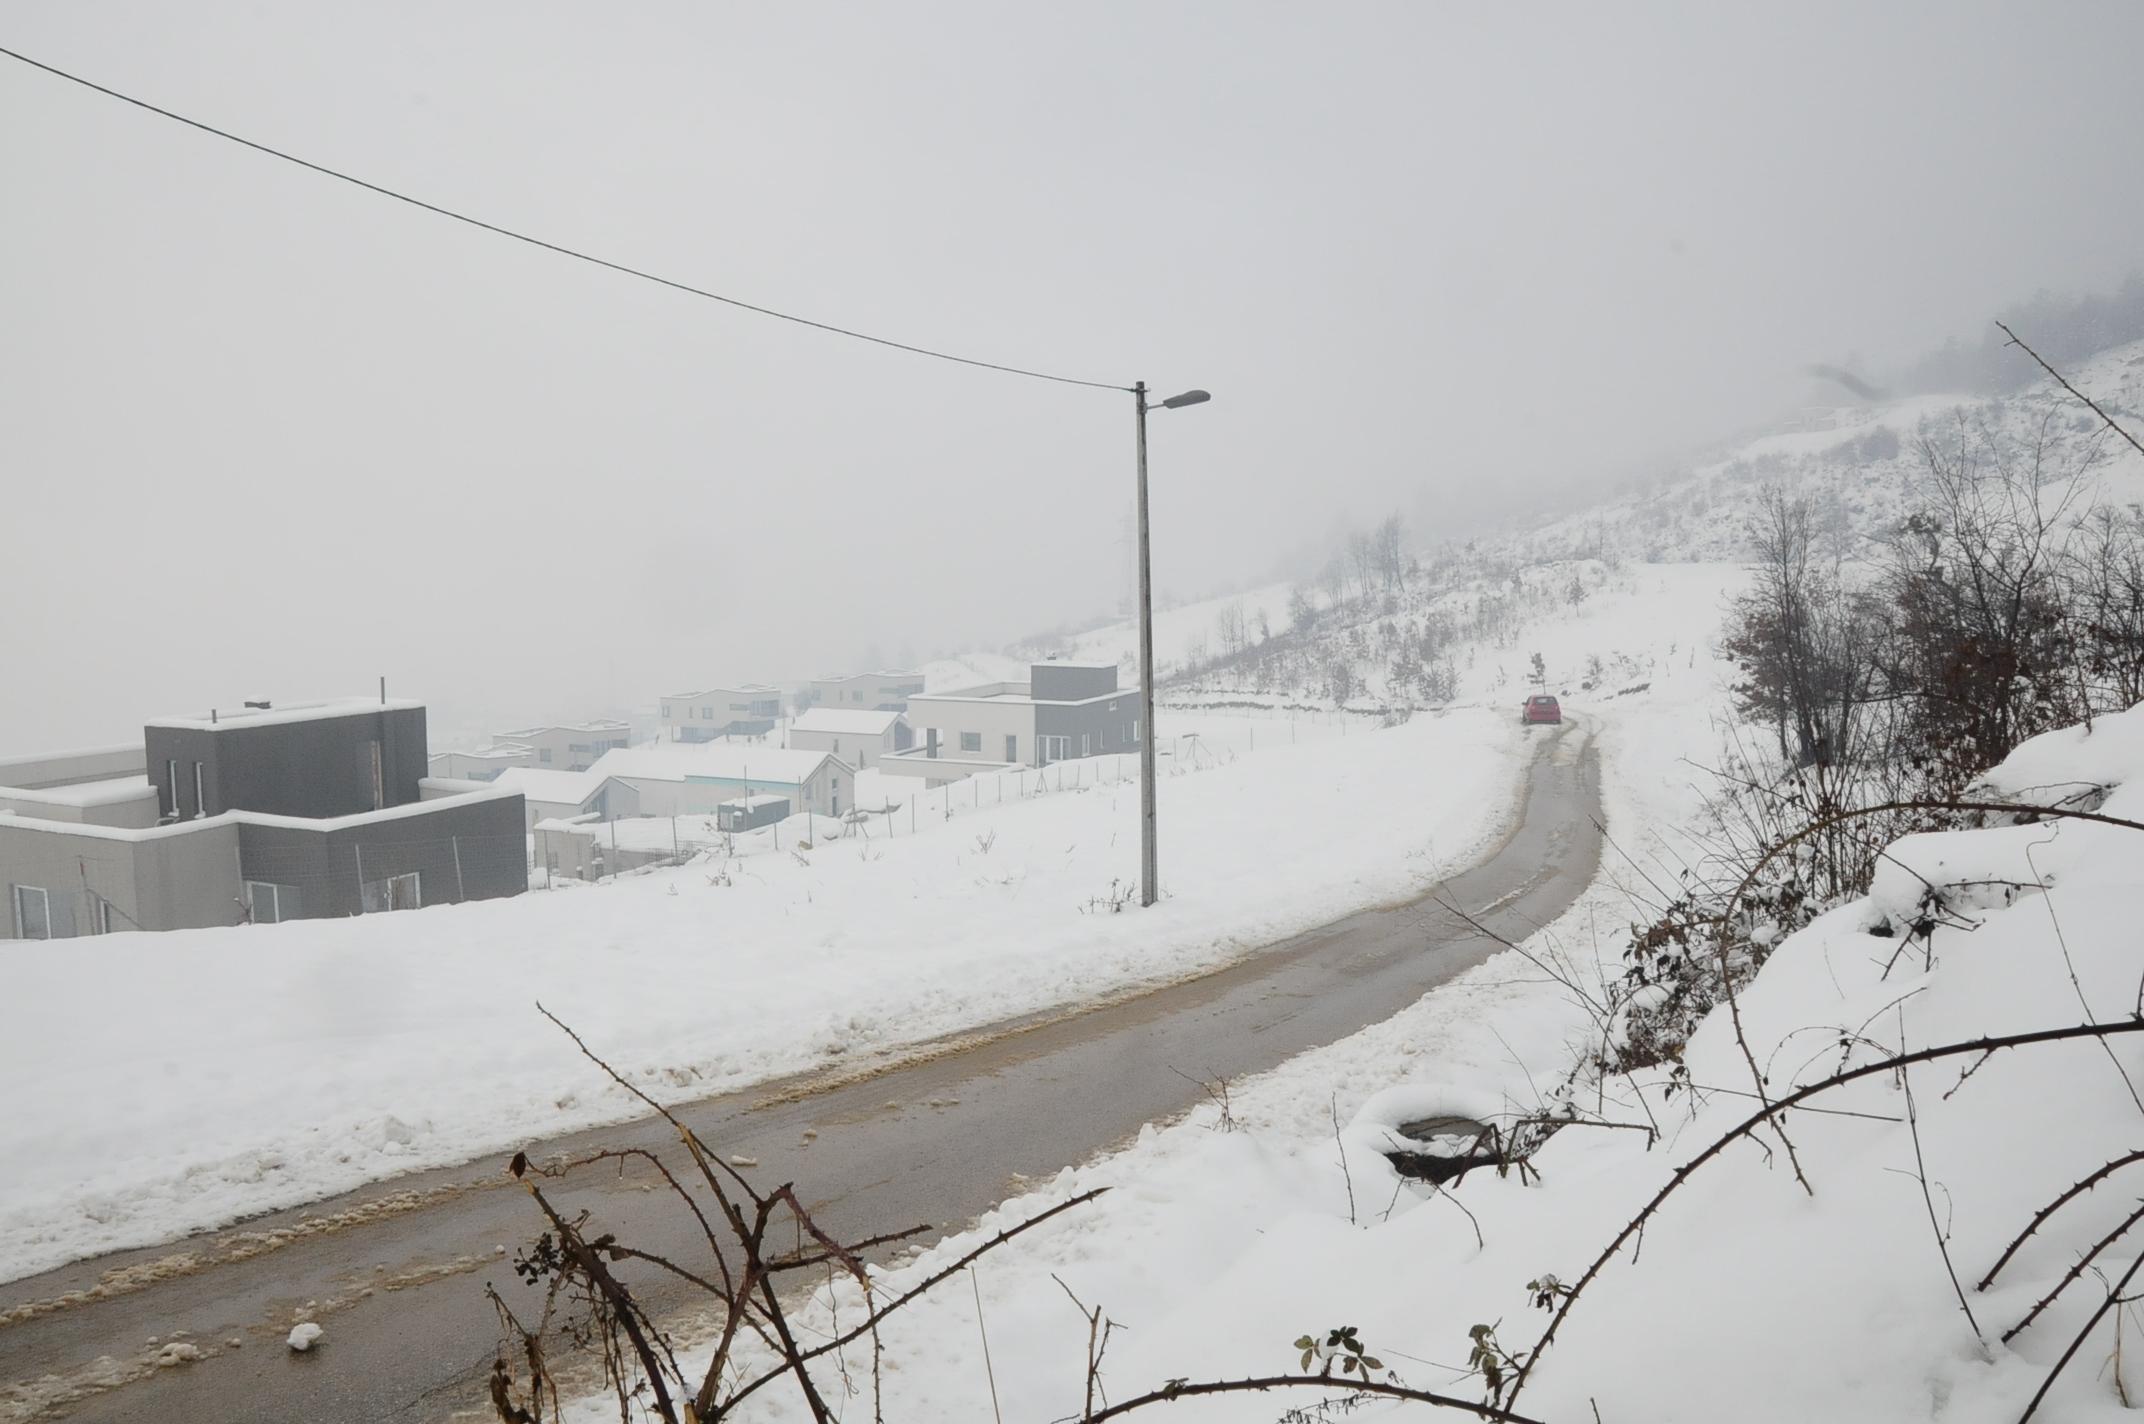 Dok je Sarajevo zameteno snijegom, put na Poljine, "sarajevsko Dedinje", prohodan i čist